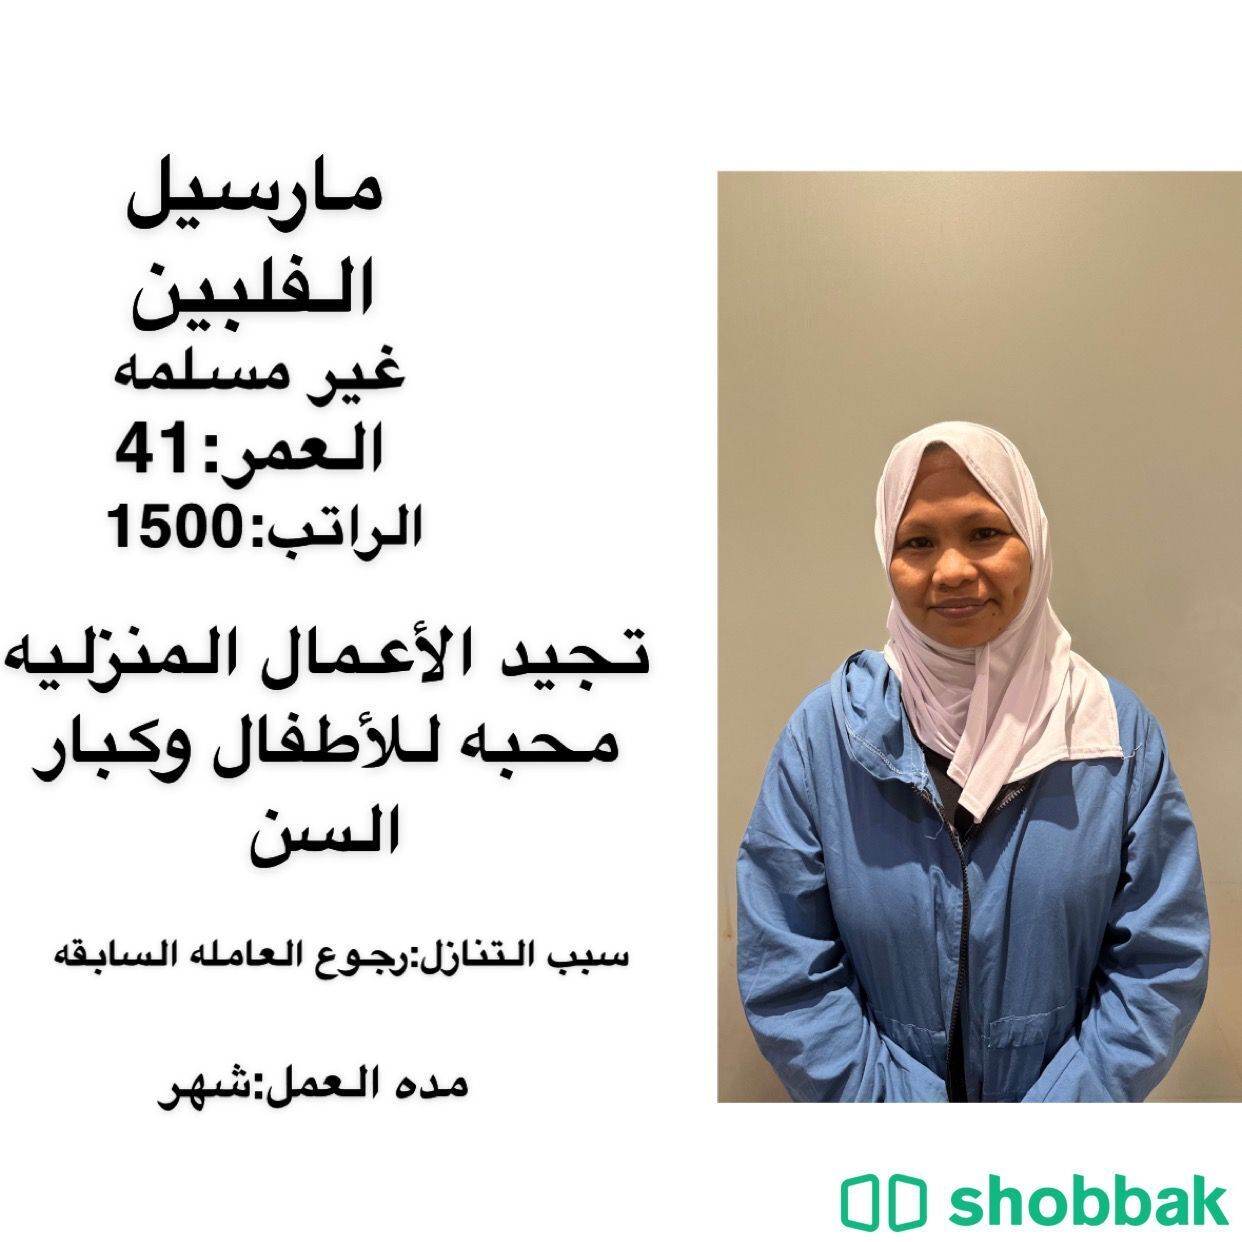 عاملات للتنازل مدربات ع الاعمال المنزليه والتعامل مع الاطفال 0591052989 Shobbak Saudi Arabia